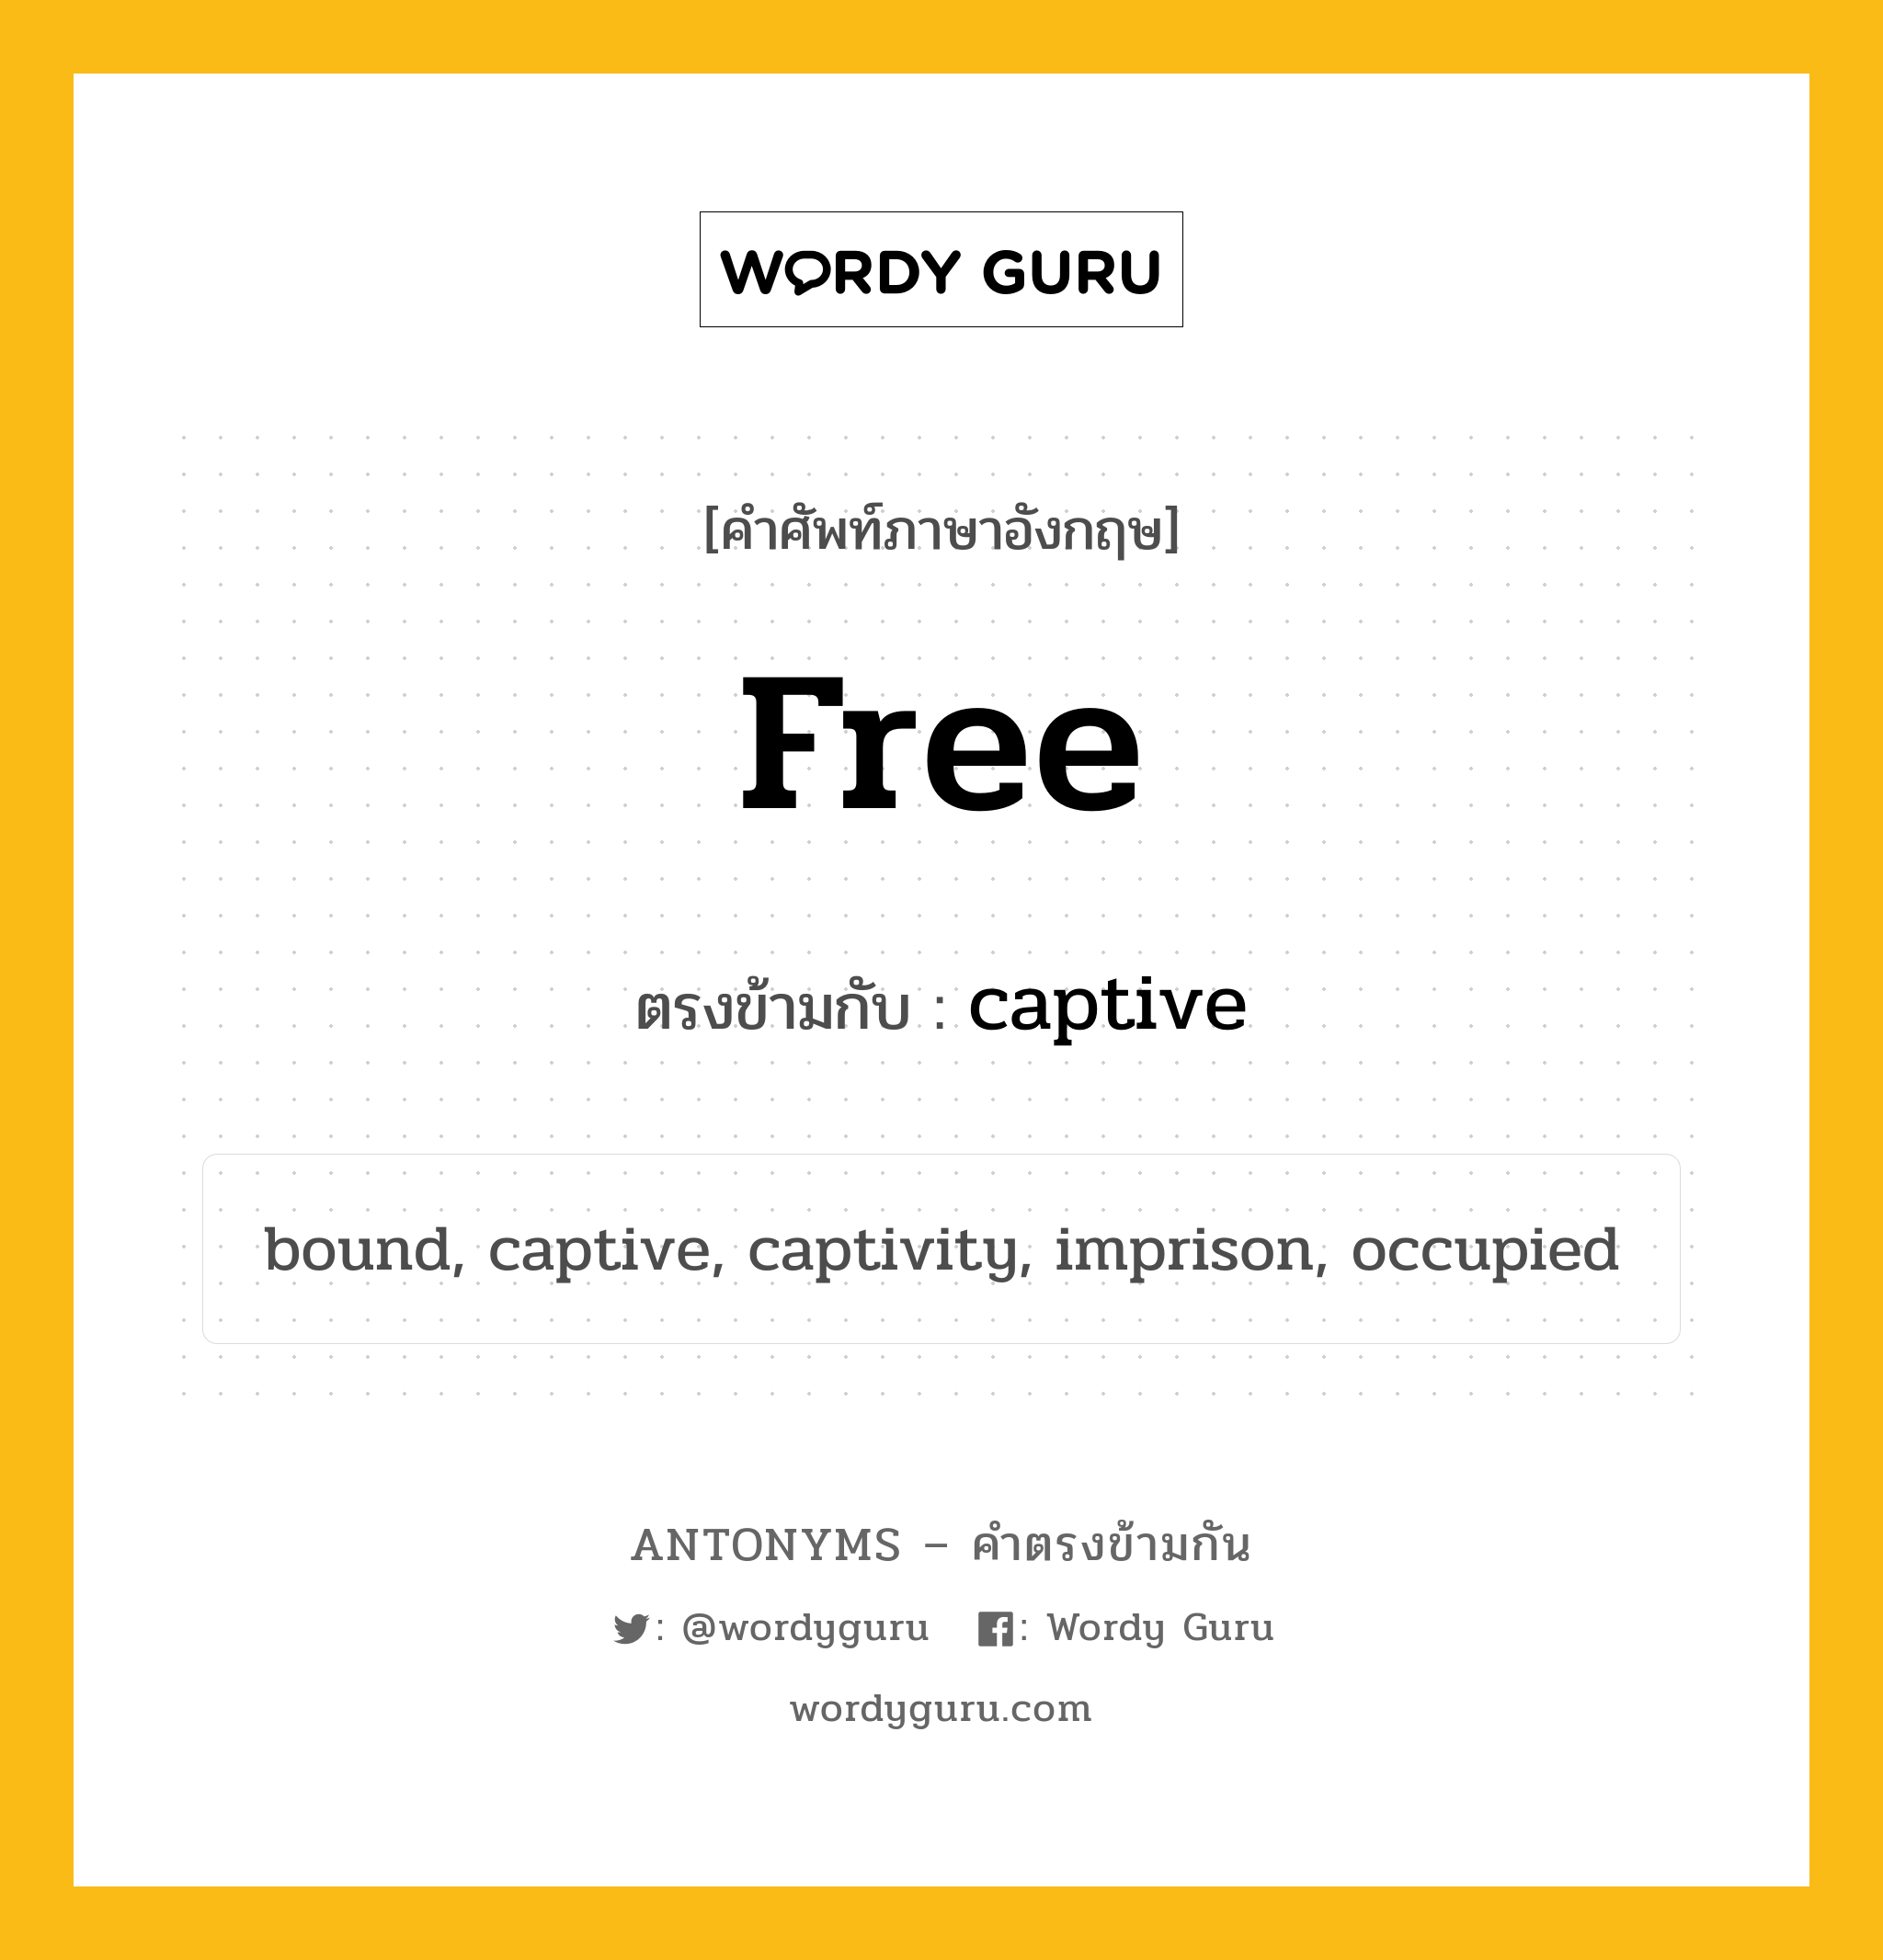 free เป็นคำตรงข้ามกับคำไหนบ้าง?, คำศัพท์ภาษาอังกฤษ free ตรงข้ามกับ captive หมวด captive